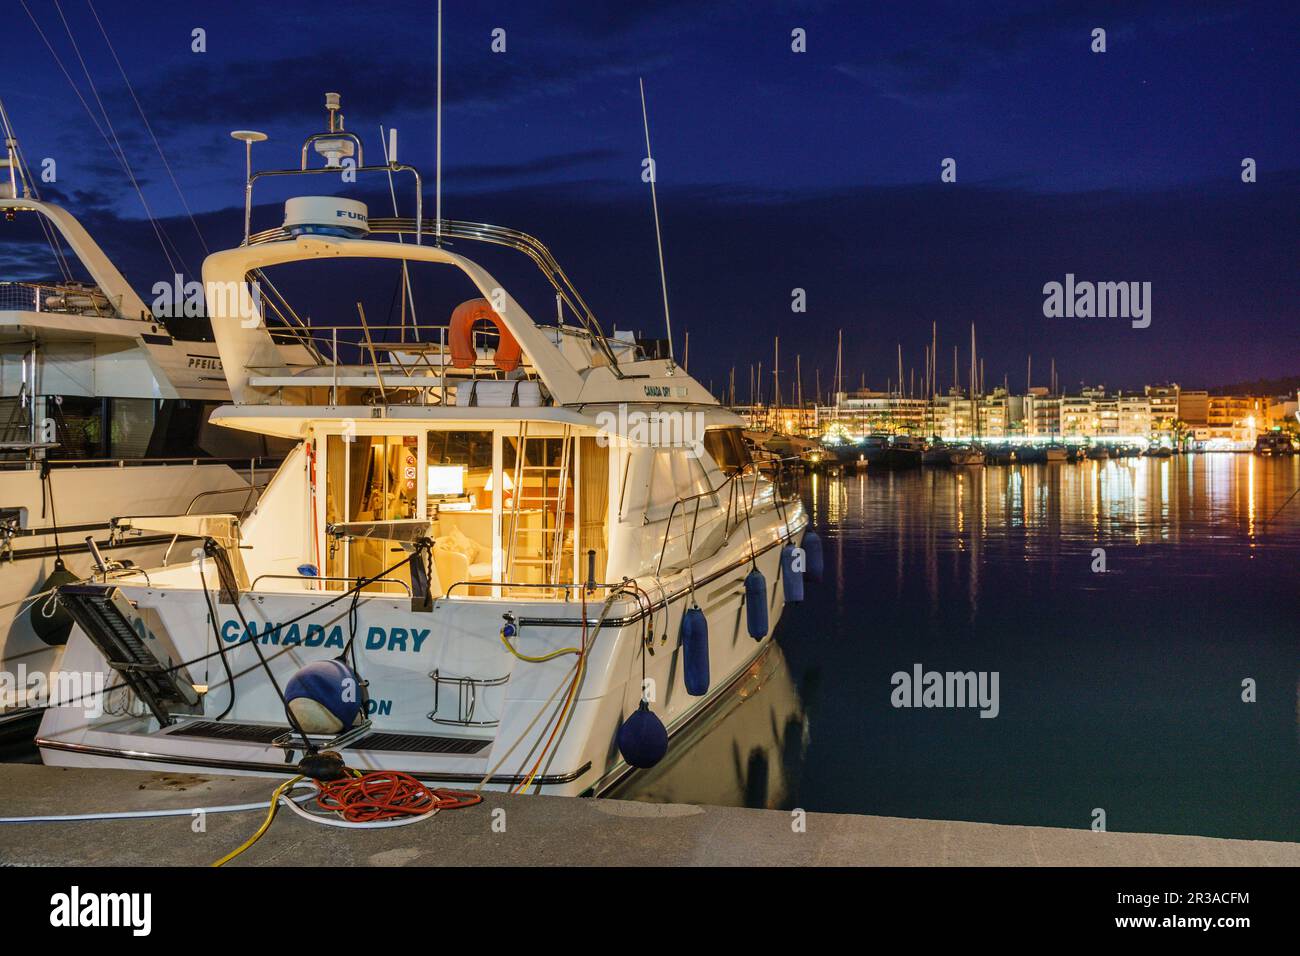 yate de lujo,enbarcaciones de recreo, puerto de Alcudia,Mallorca, islas baleares, Spain. Stock Photo